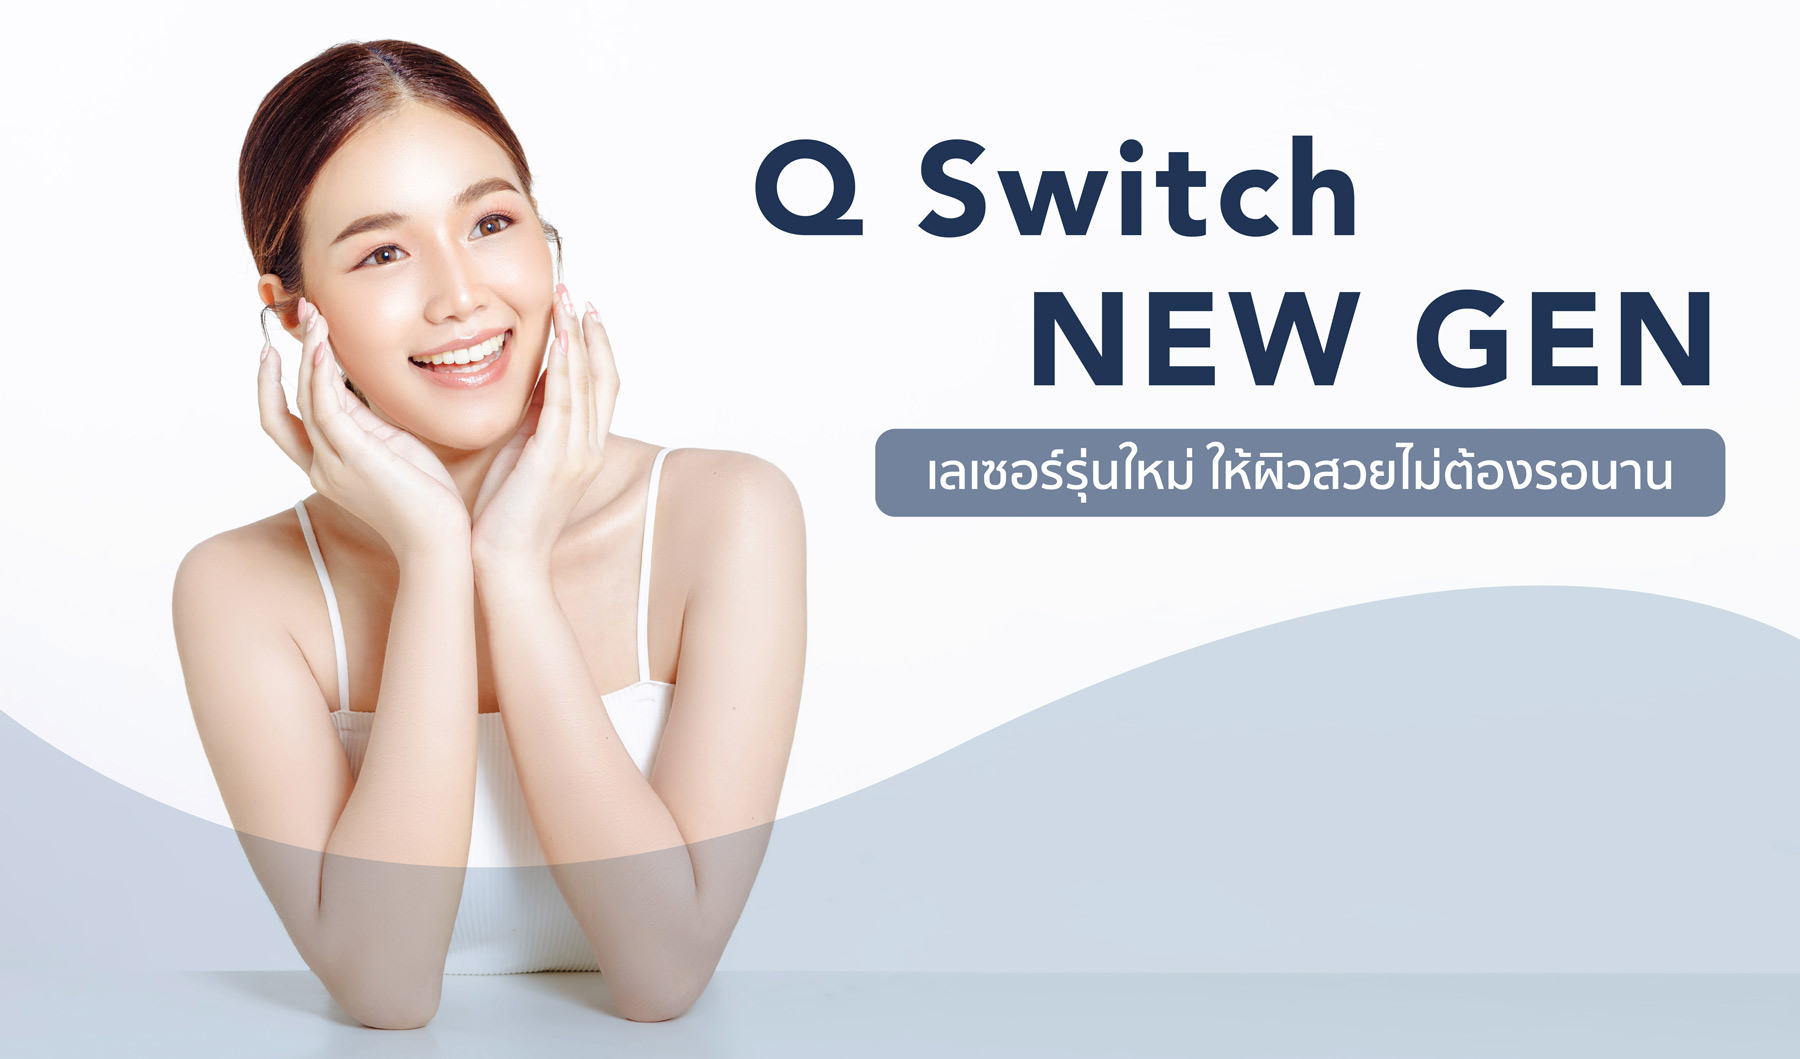 Q-Switch NEW GEN